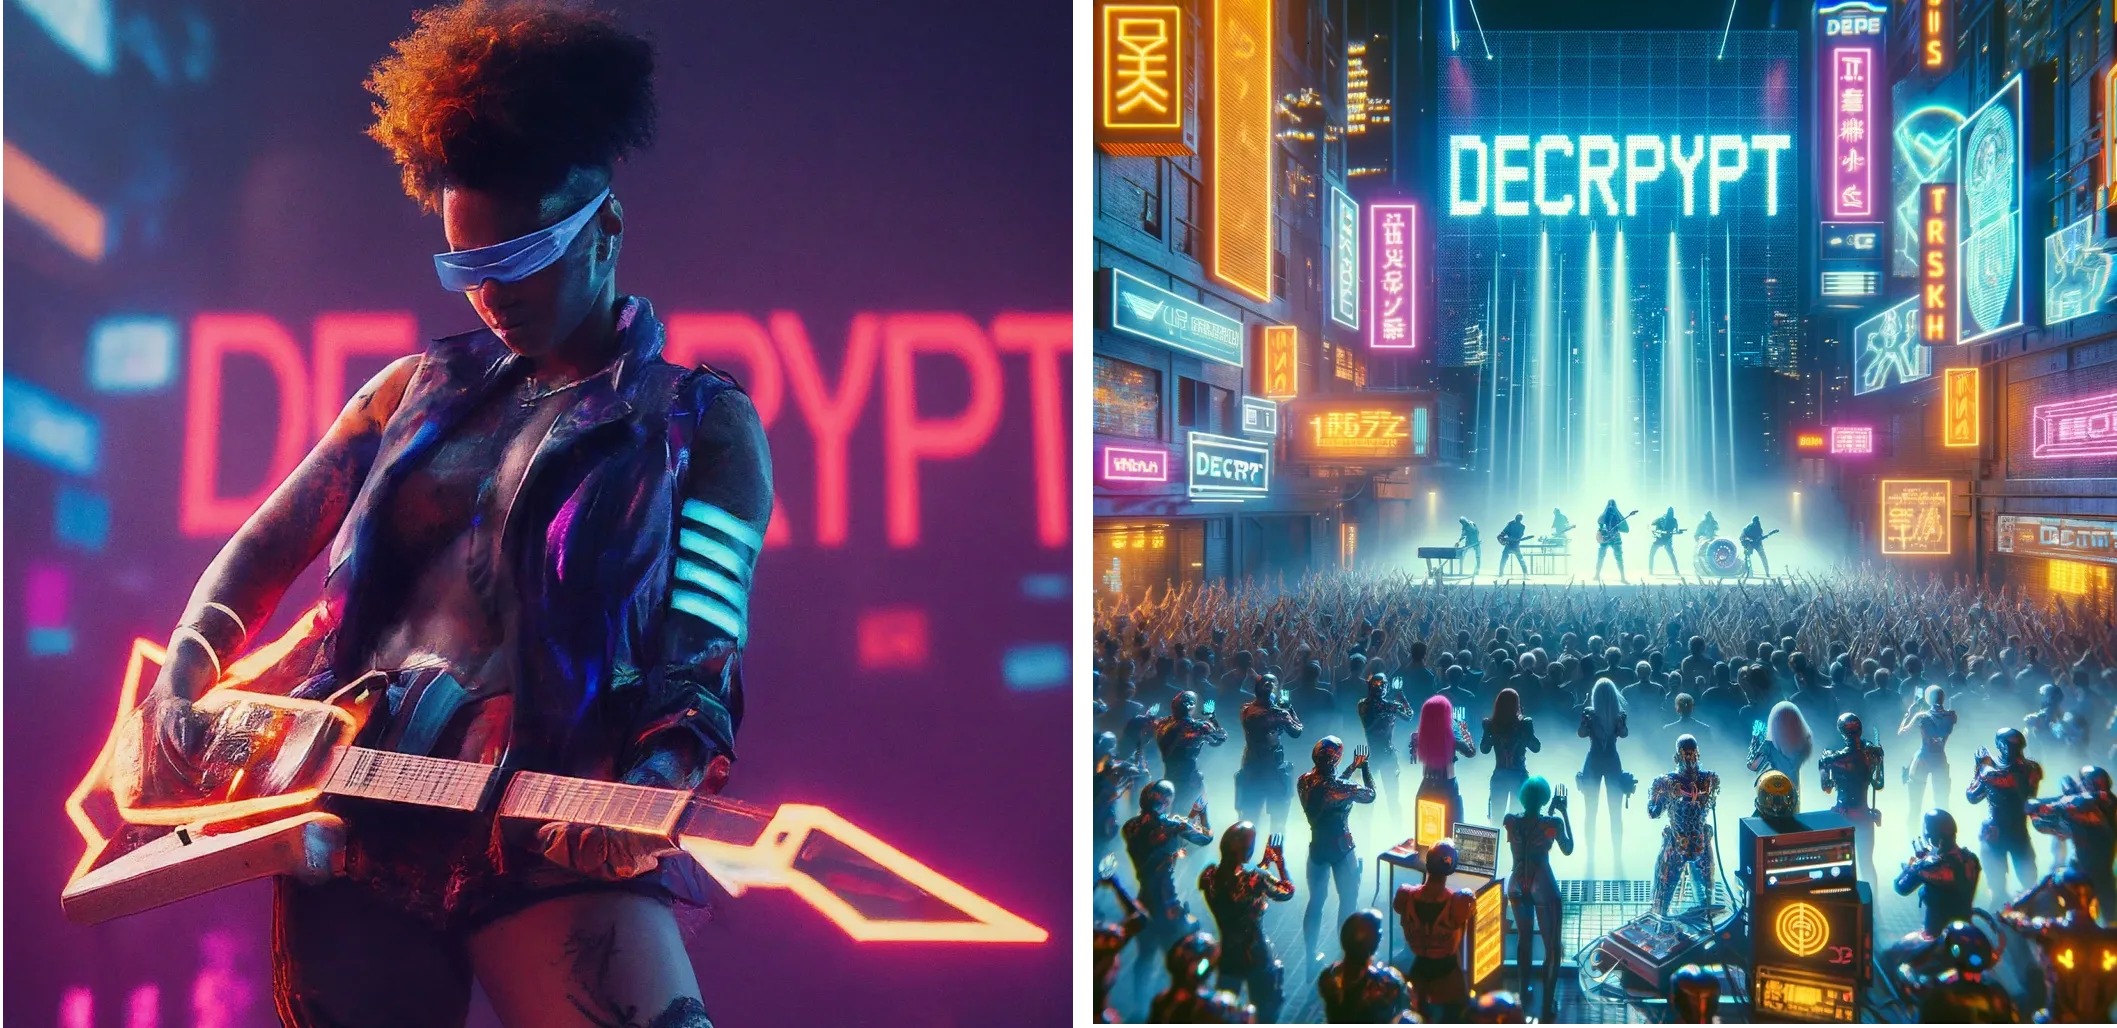 Cyberpunk futuristisk artist som opptrer på scenen med ordet "DECRYPT" i neonlys i bakgrunnen. Gemini (venstre) vs ChatGPT Plus (høyre)